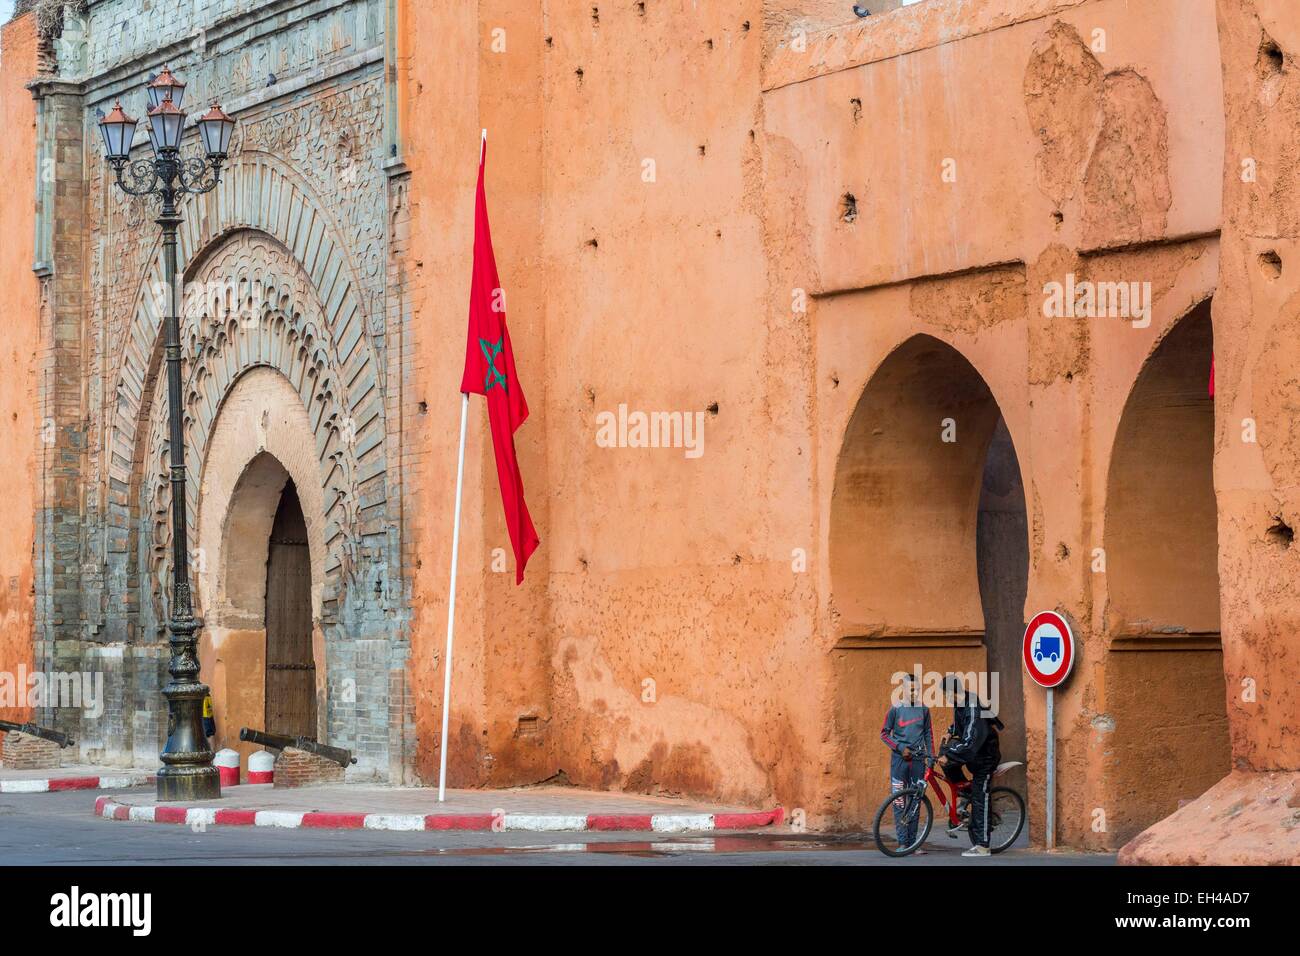 Le Maroc, Haut Atlas, Marrakech, ville impériale mur autour de la médina (Site du patrimoine mondial de l'UNESCO) à Bab Agnaou (12ème siècle) Banque D'Images